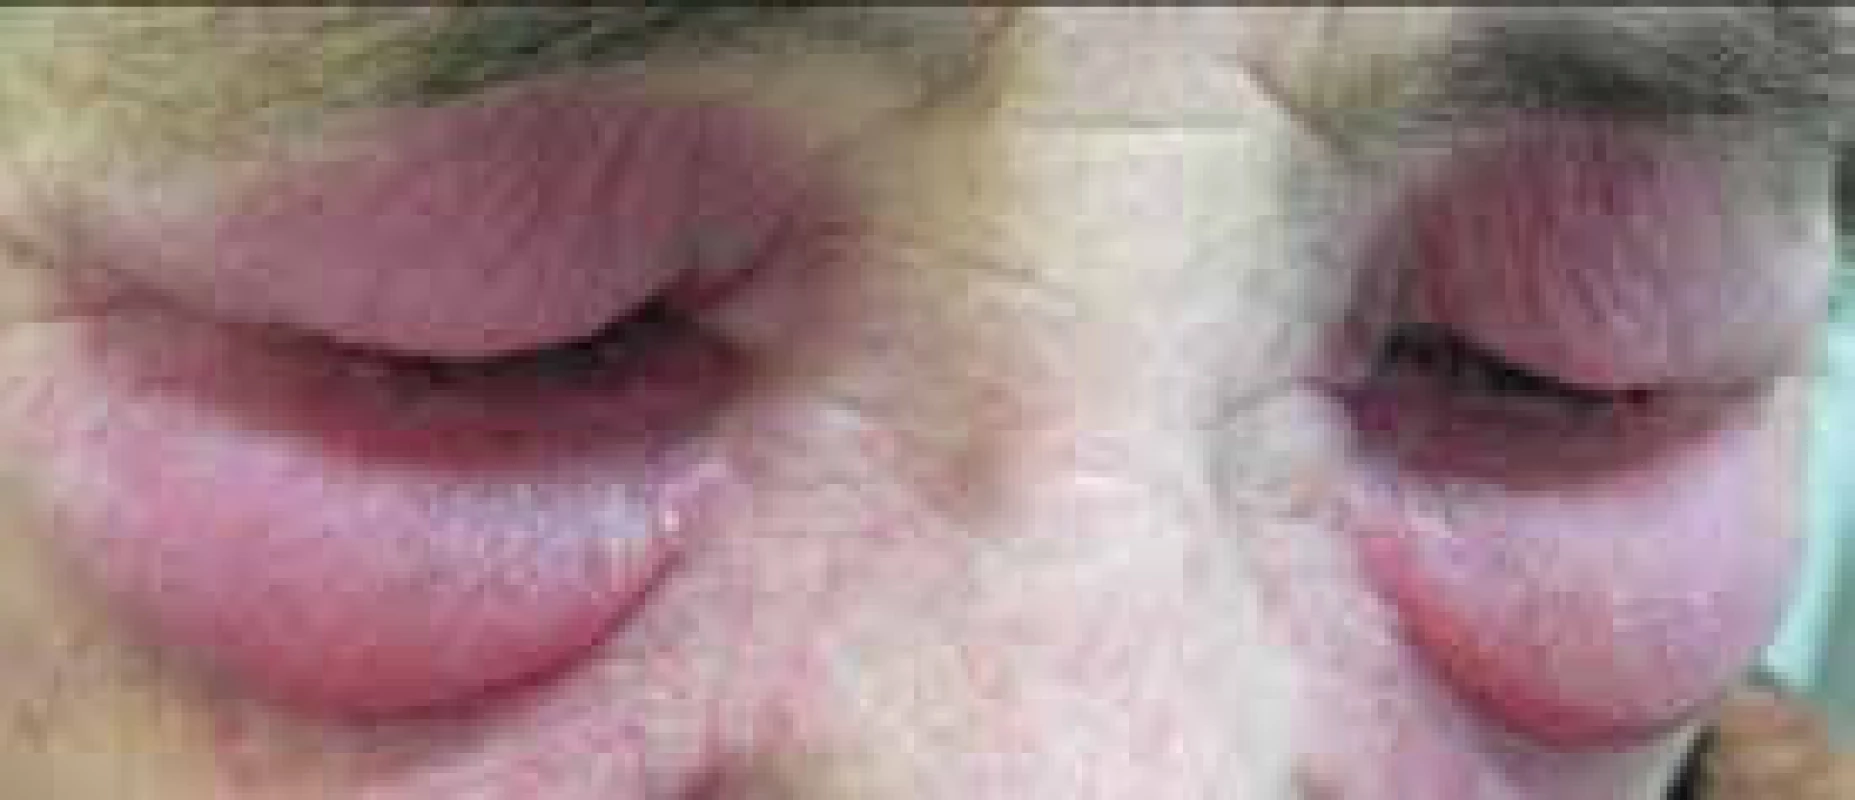 Výrazný edém kolem očí s heliotrop zbarvením u pacientky s dermatomyozitidou